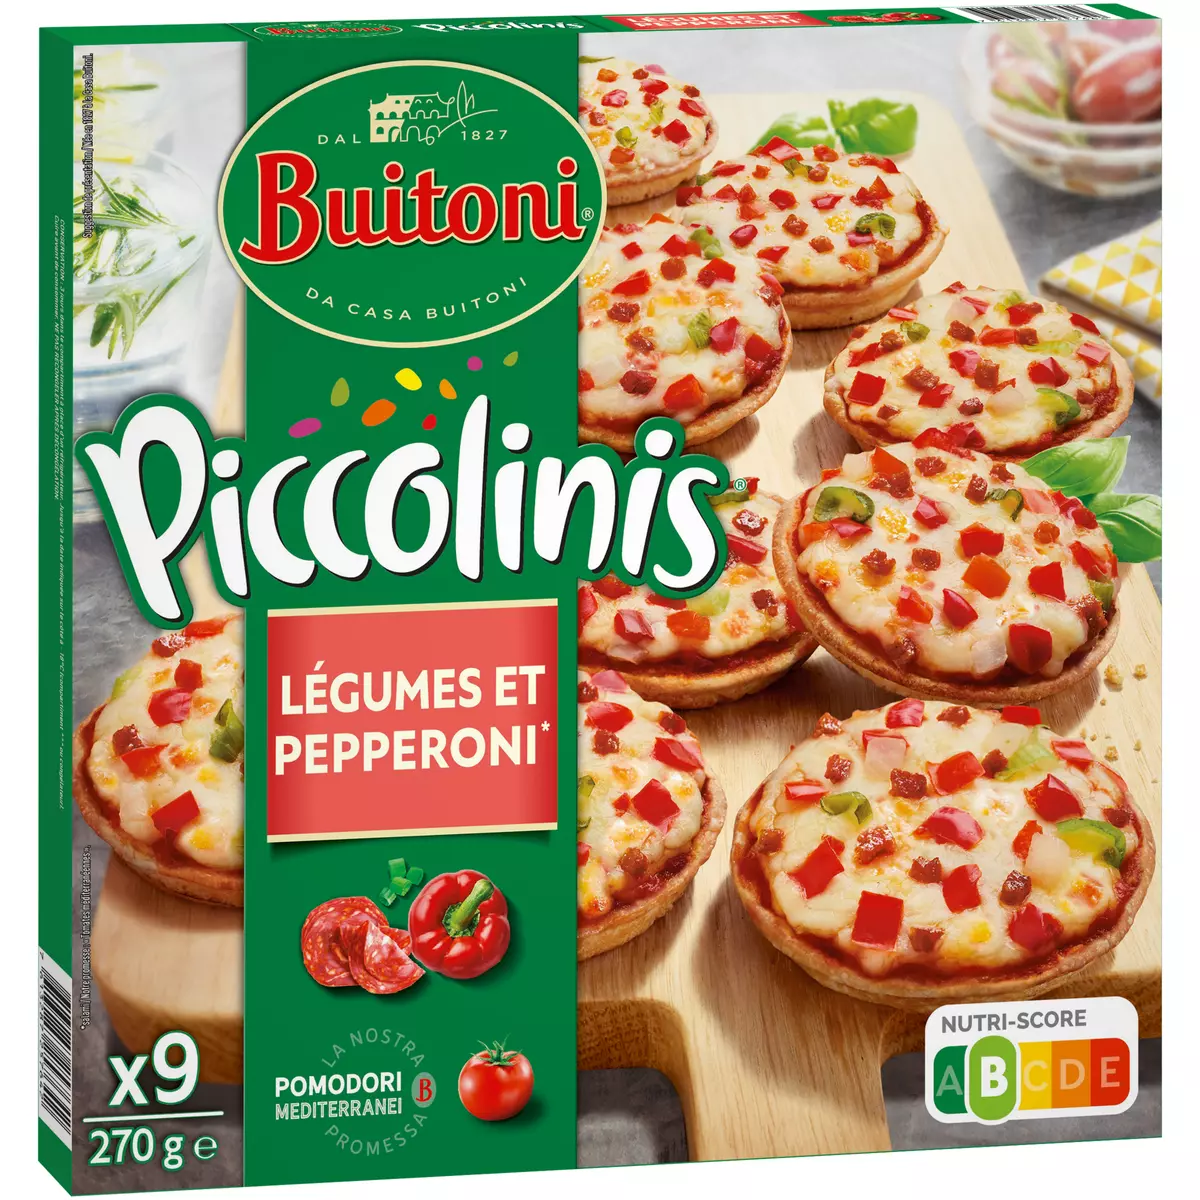 BUITONI Piccolinis - mini pizza légumes et pepperoni 9 pièces 270g